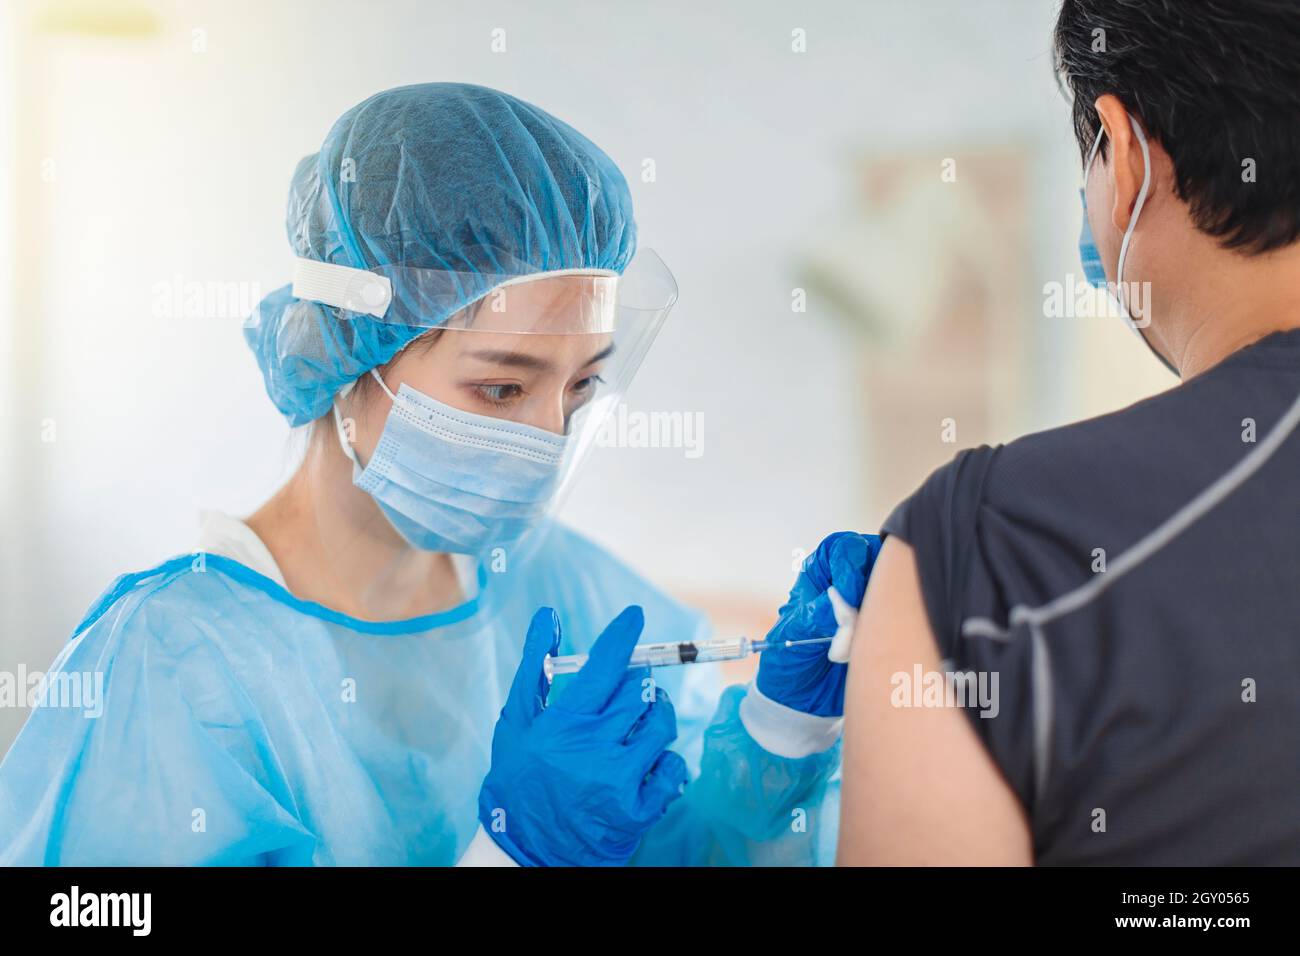 Der Arzt oder die Krankenschwester trägt Kleider, Masken und Augenmasken, um einem Patienten bei der Injektion zu helfen Stockfoto